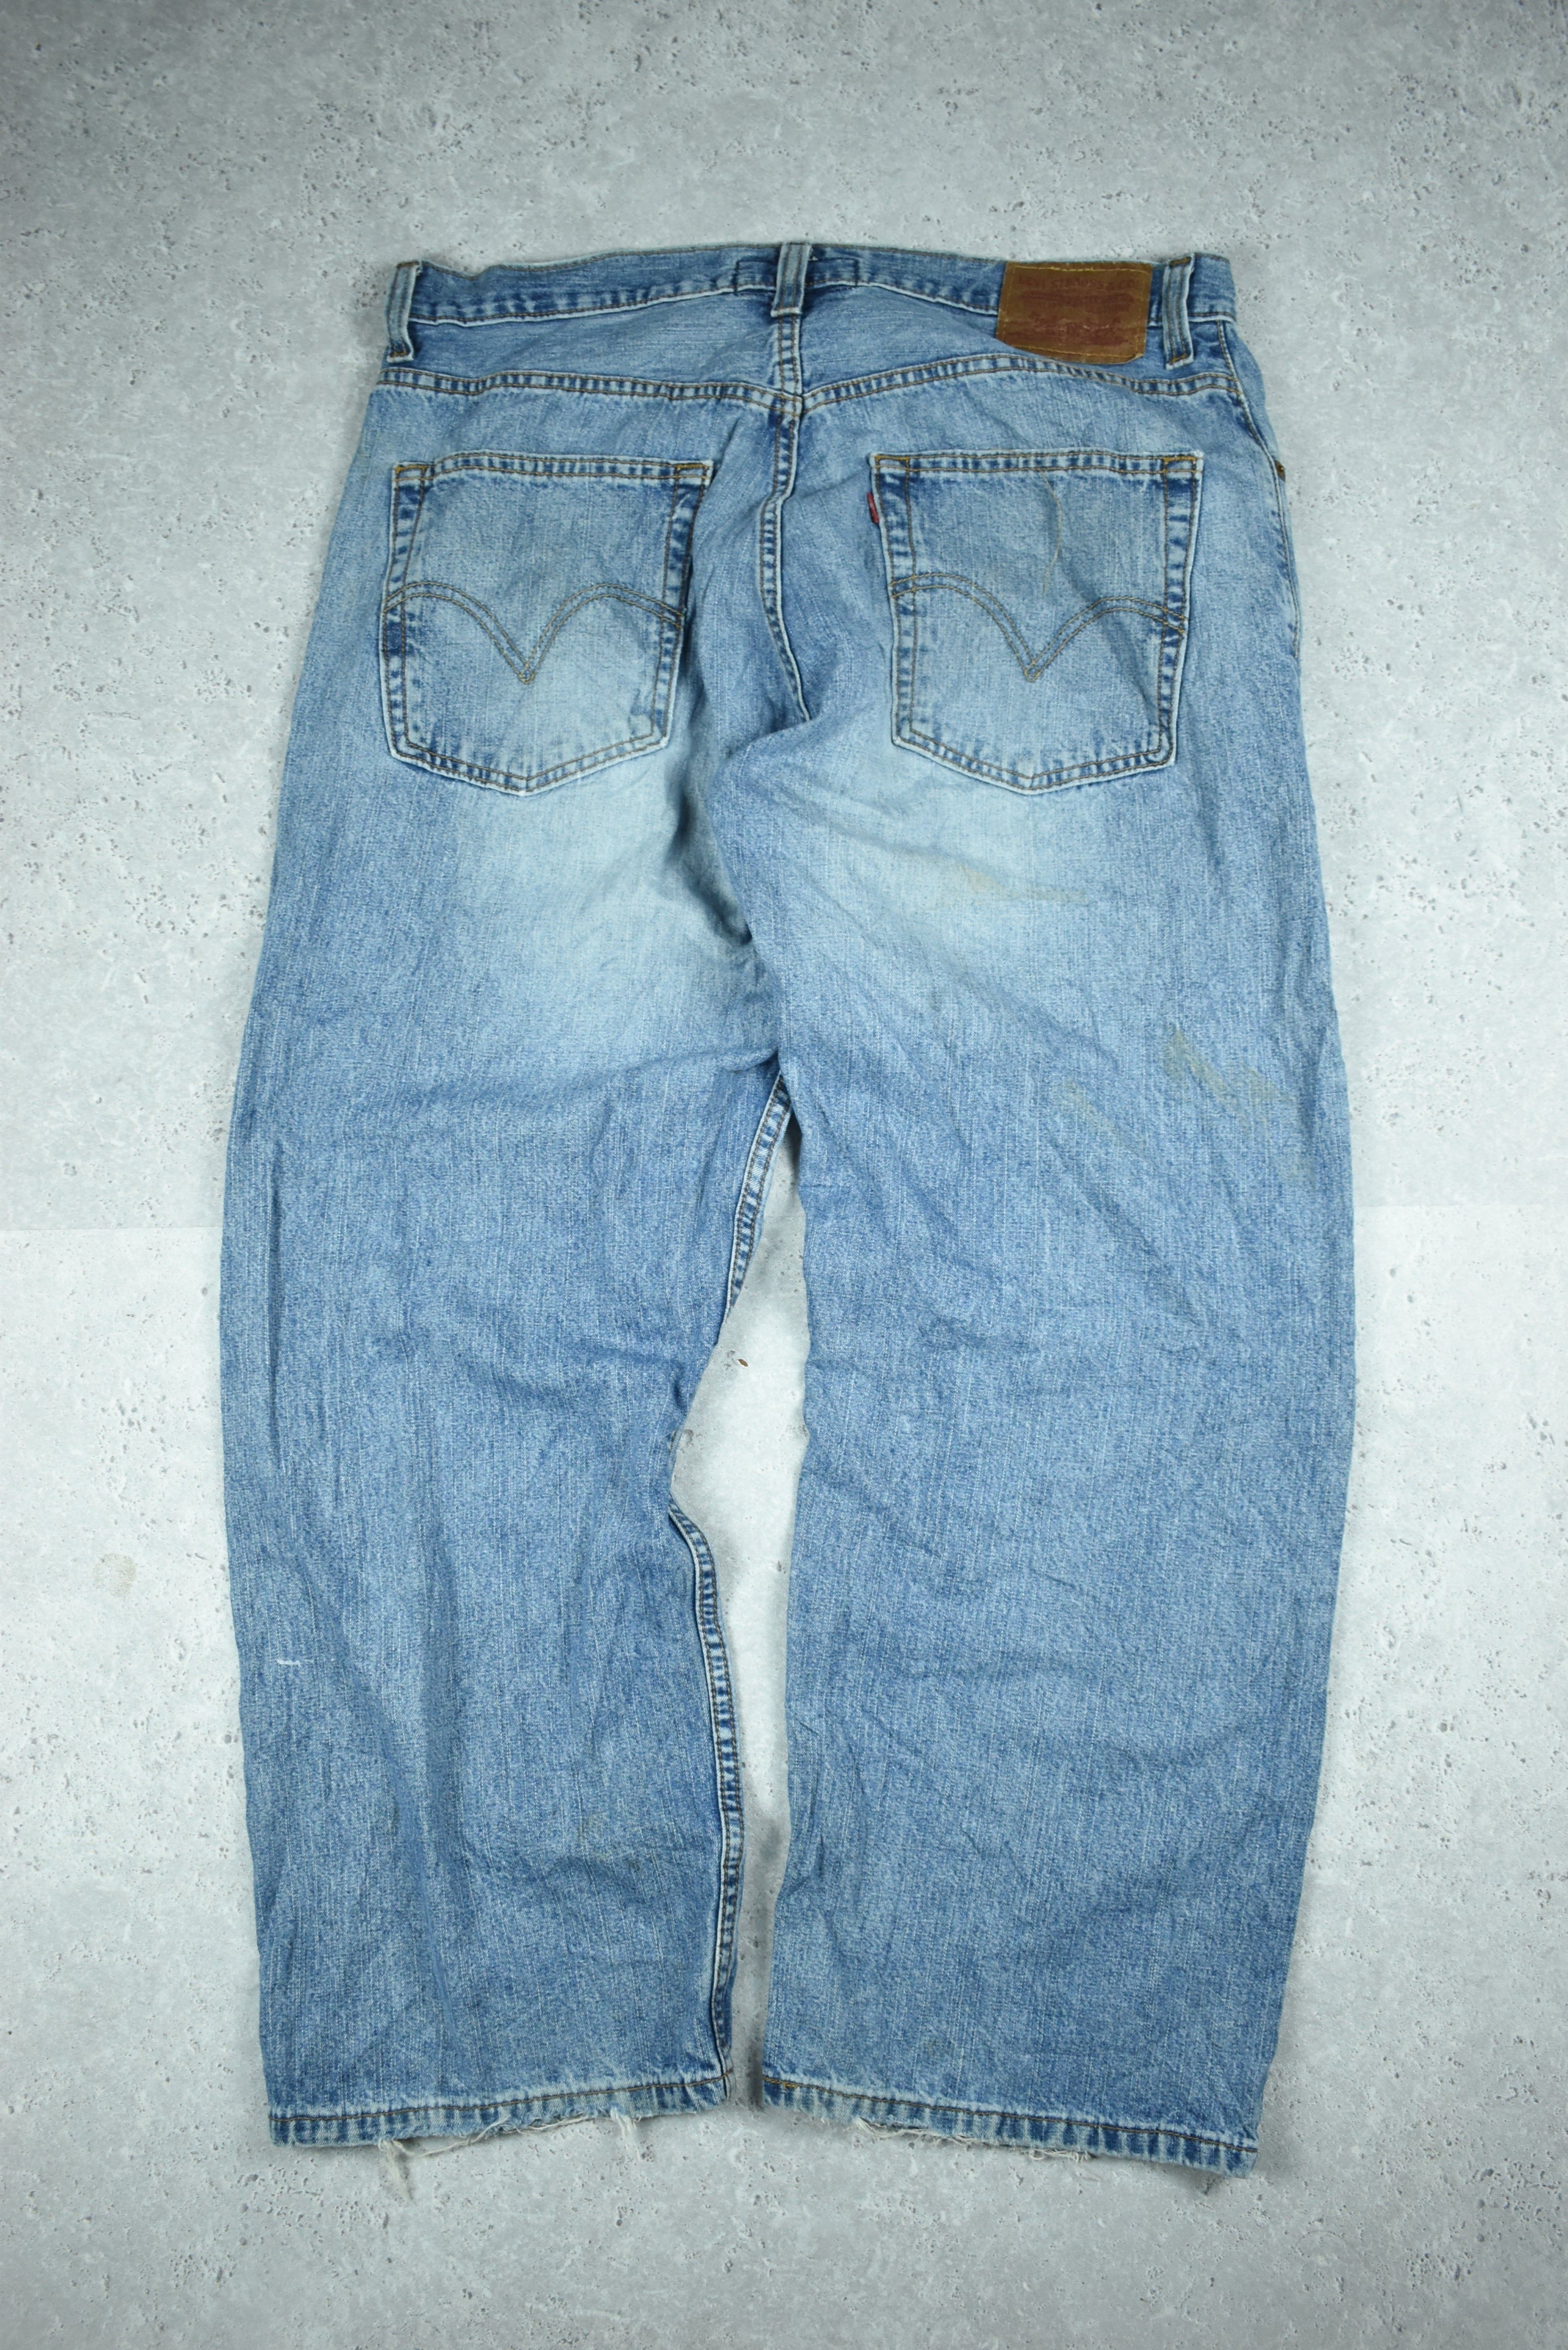 Vintage Levis 569 Denim Jeans 36x30